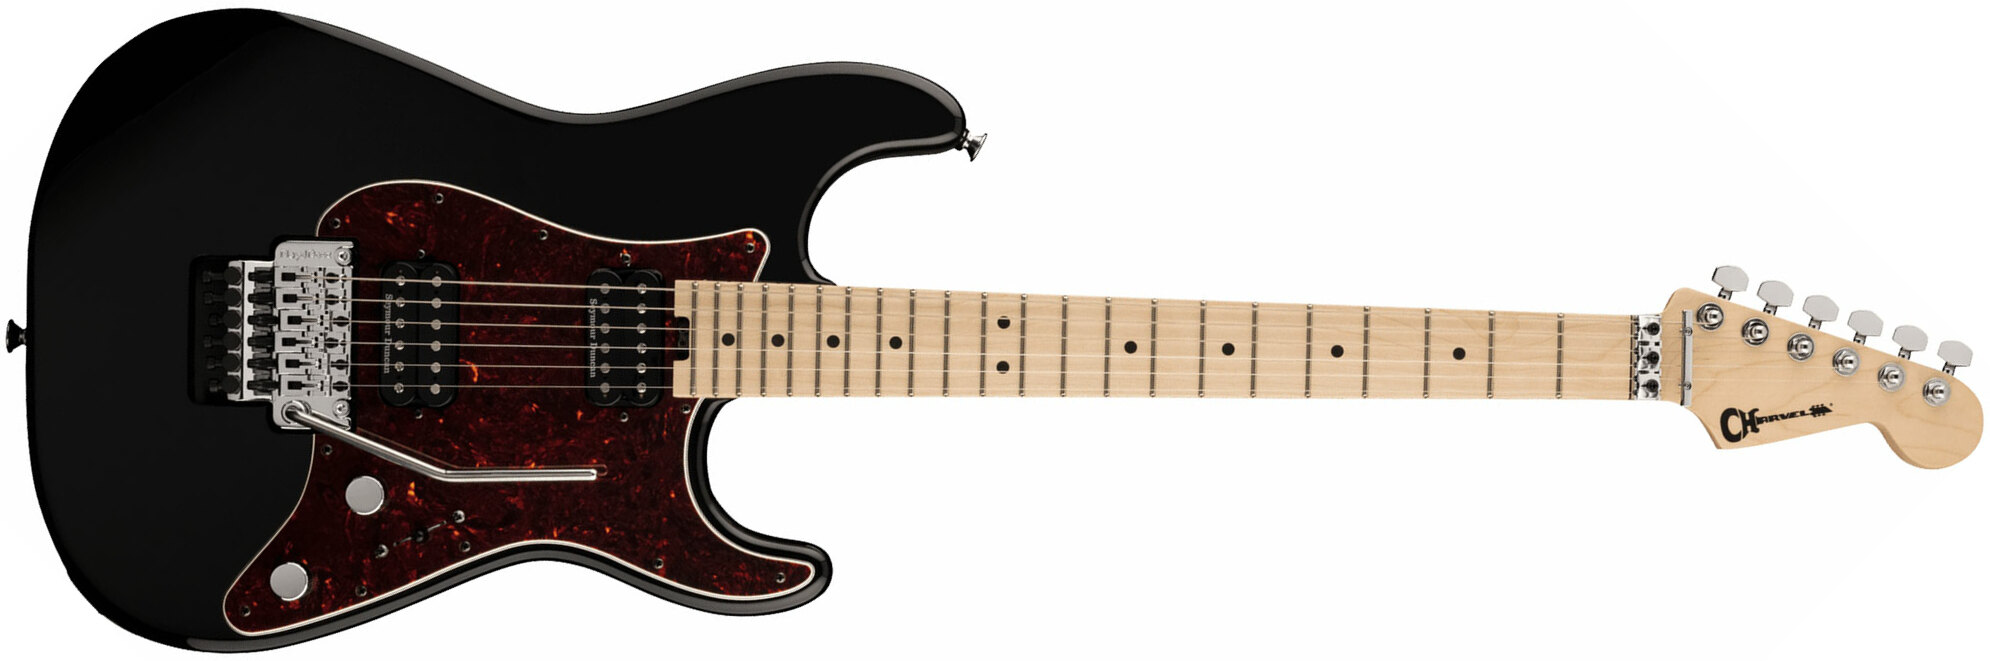 Charvel So-cal Style 1 Hh Fr M Pro-mod 2h Seymour Duncan Mn - Gamera Black - Guitare Électrique Forme Str - Main picture